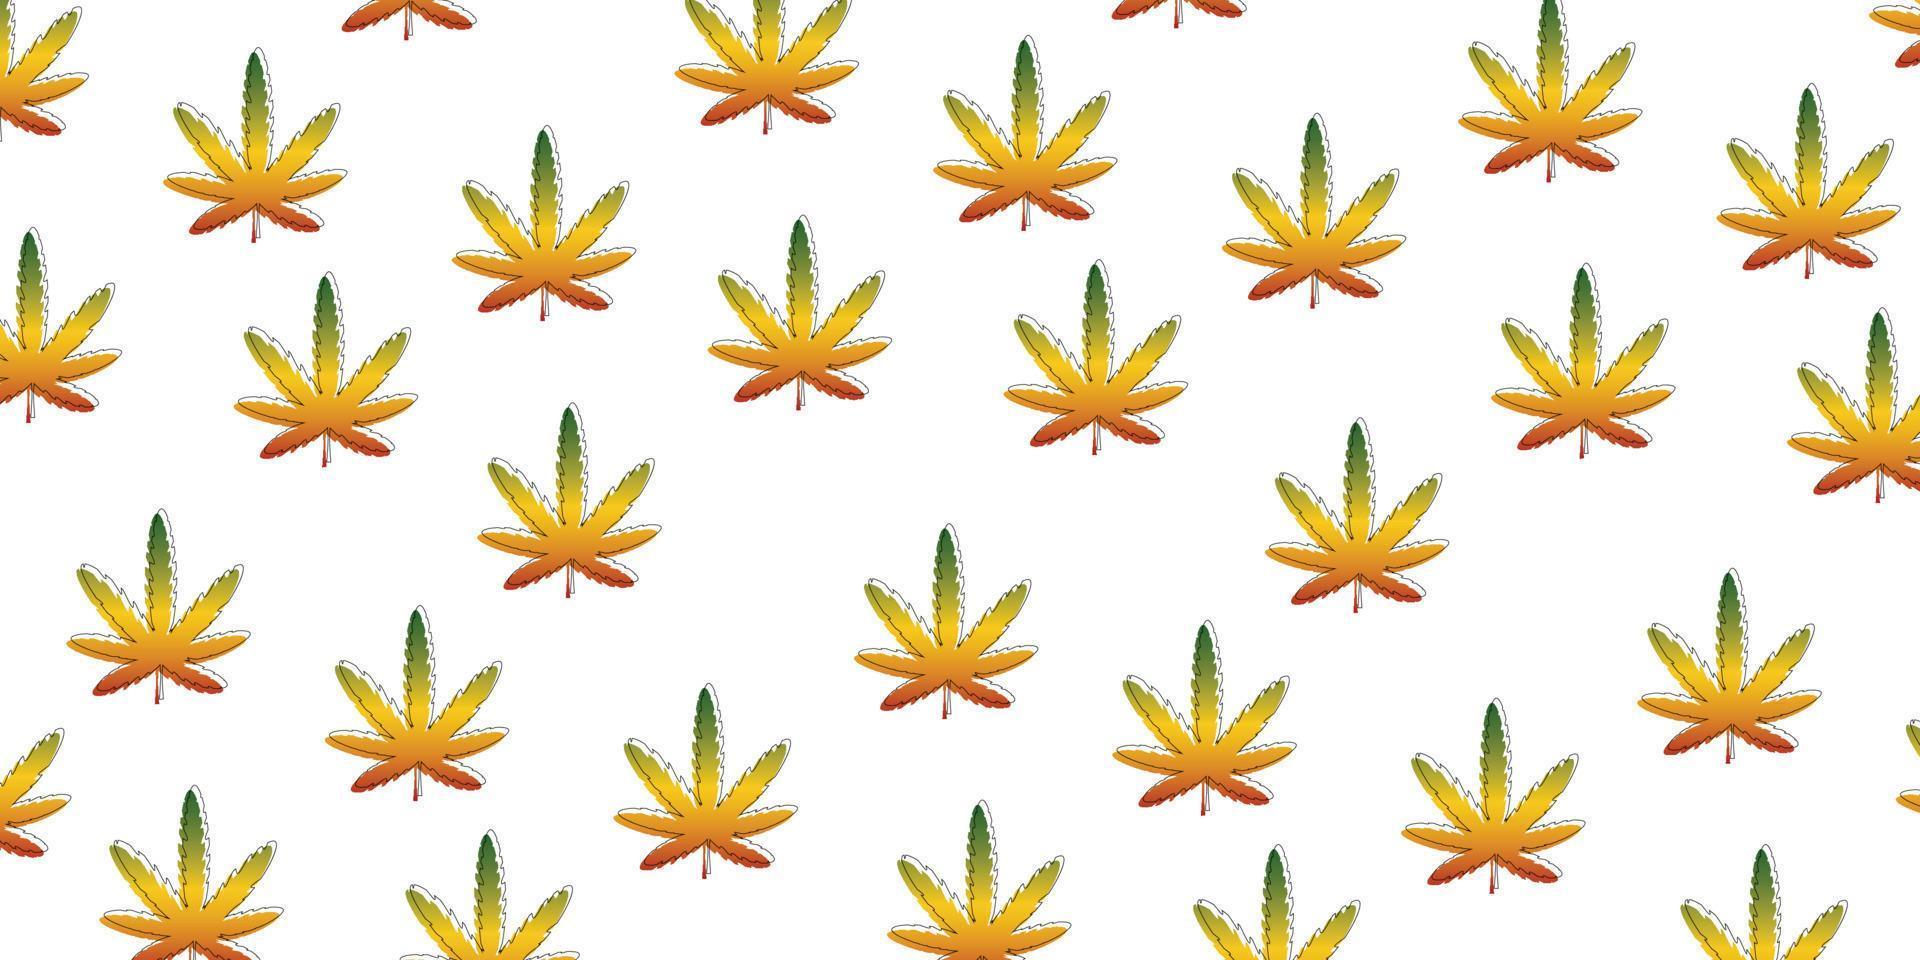 reagge jamaica met marihuana-stijl patroon achtergrond vector